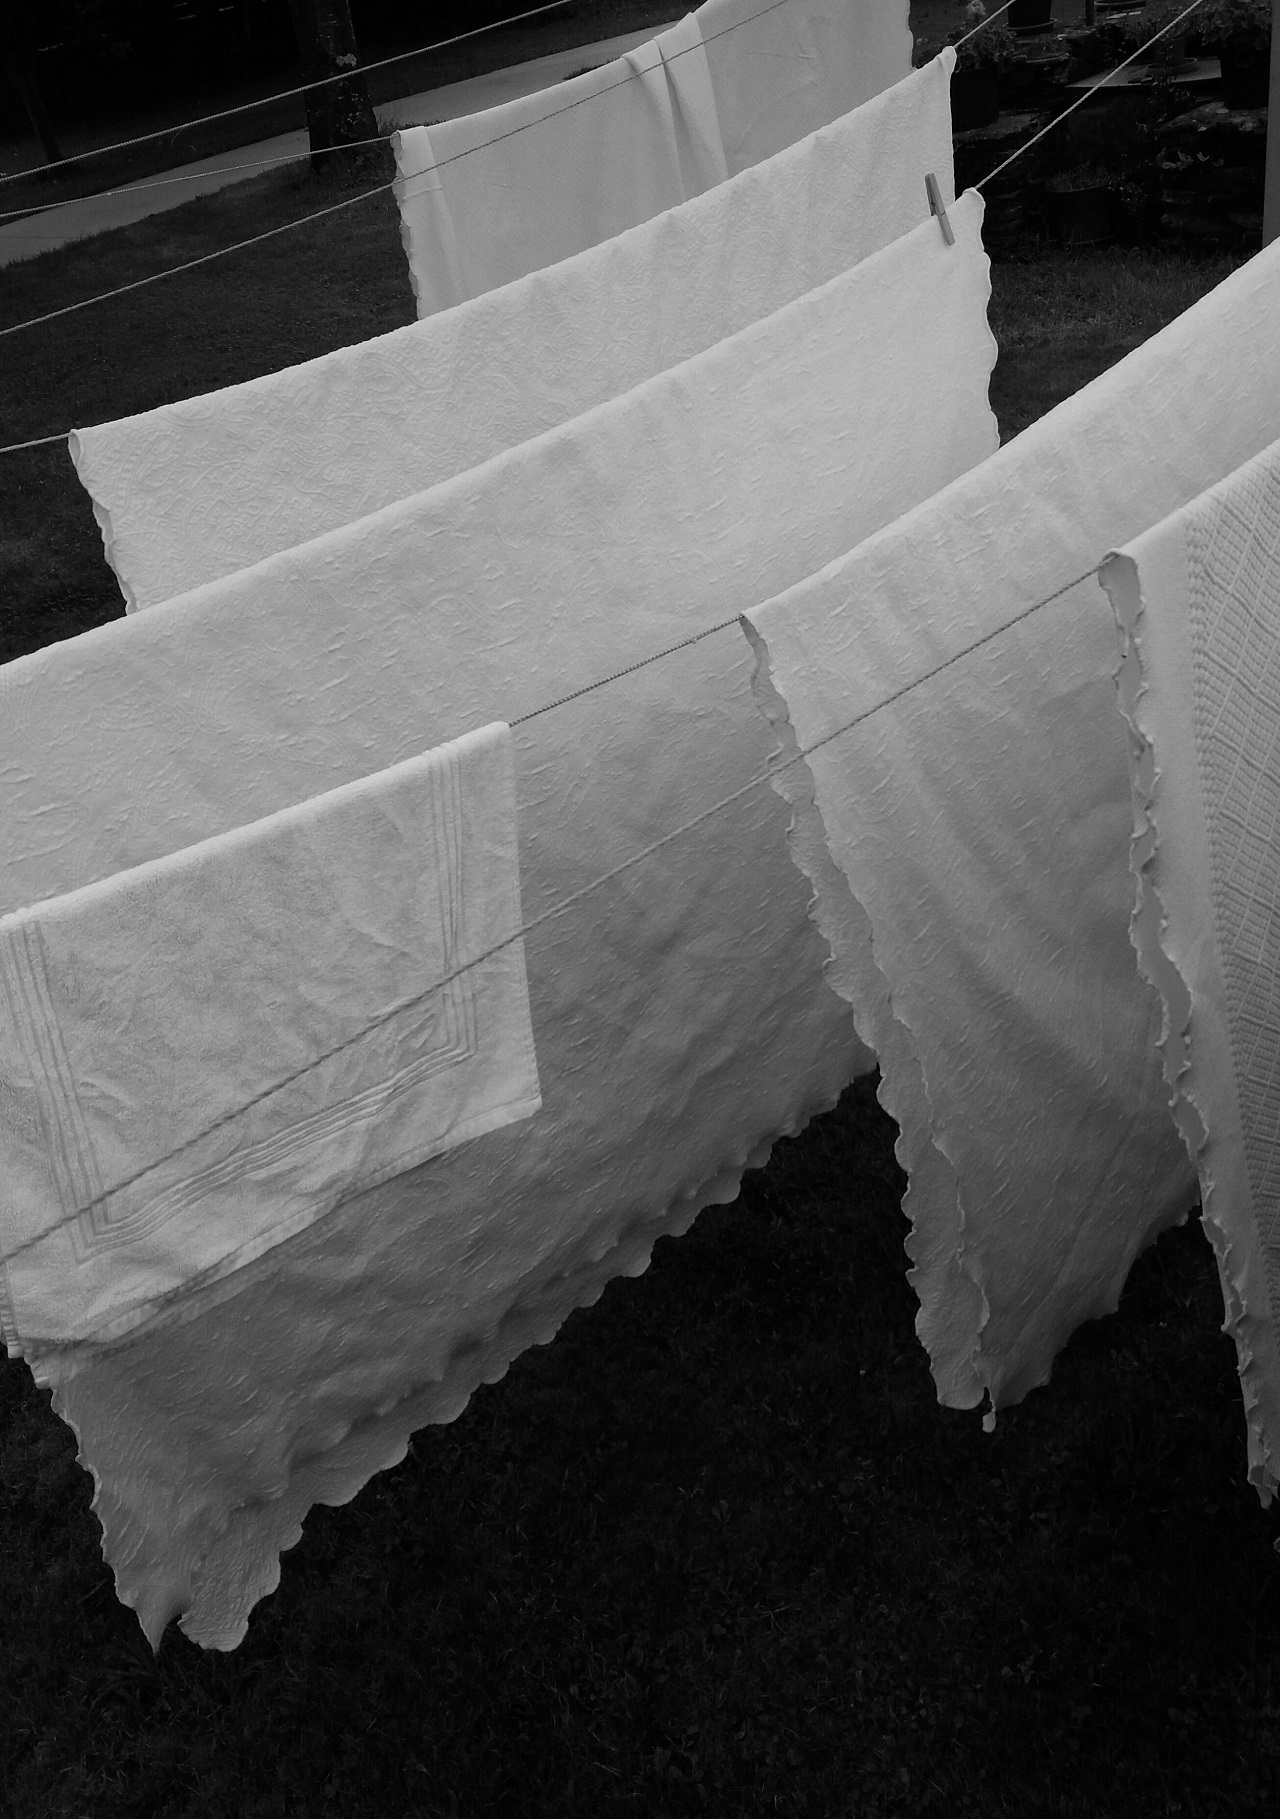 drying white linens